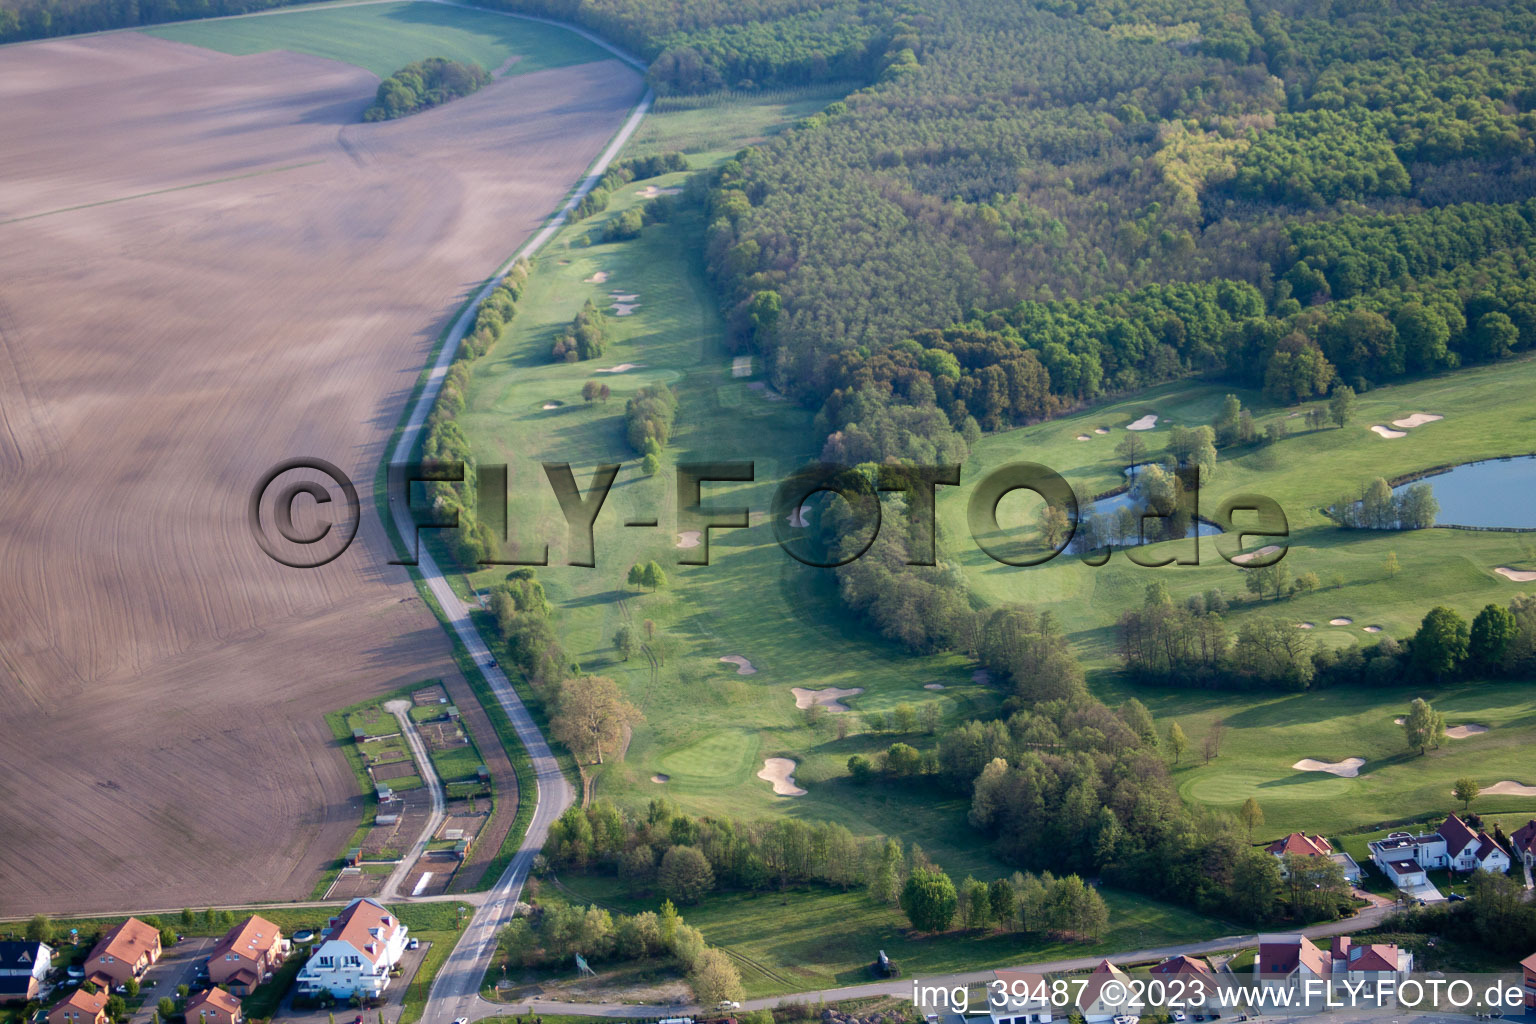 Vue aérienne de Club de golf Soufflenheim Baden-Baden à Soufflenheim dans le département Bas Rhin, France